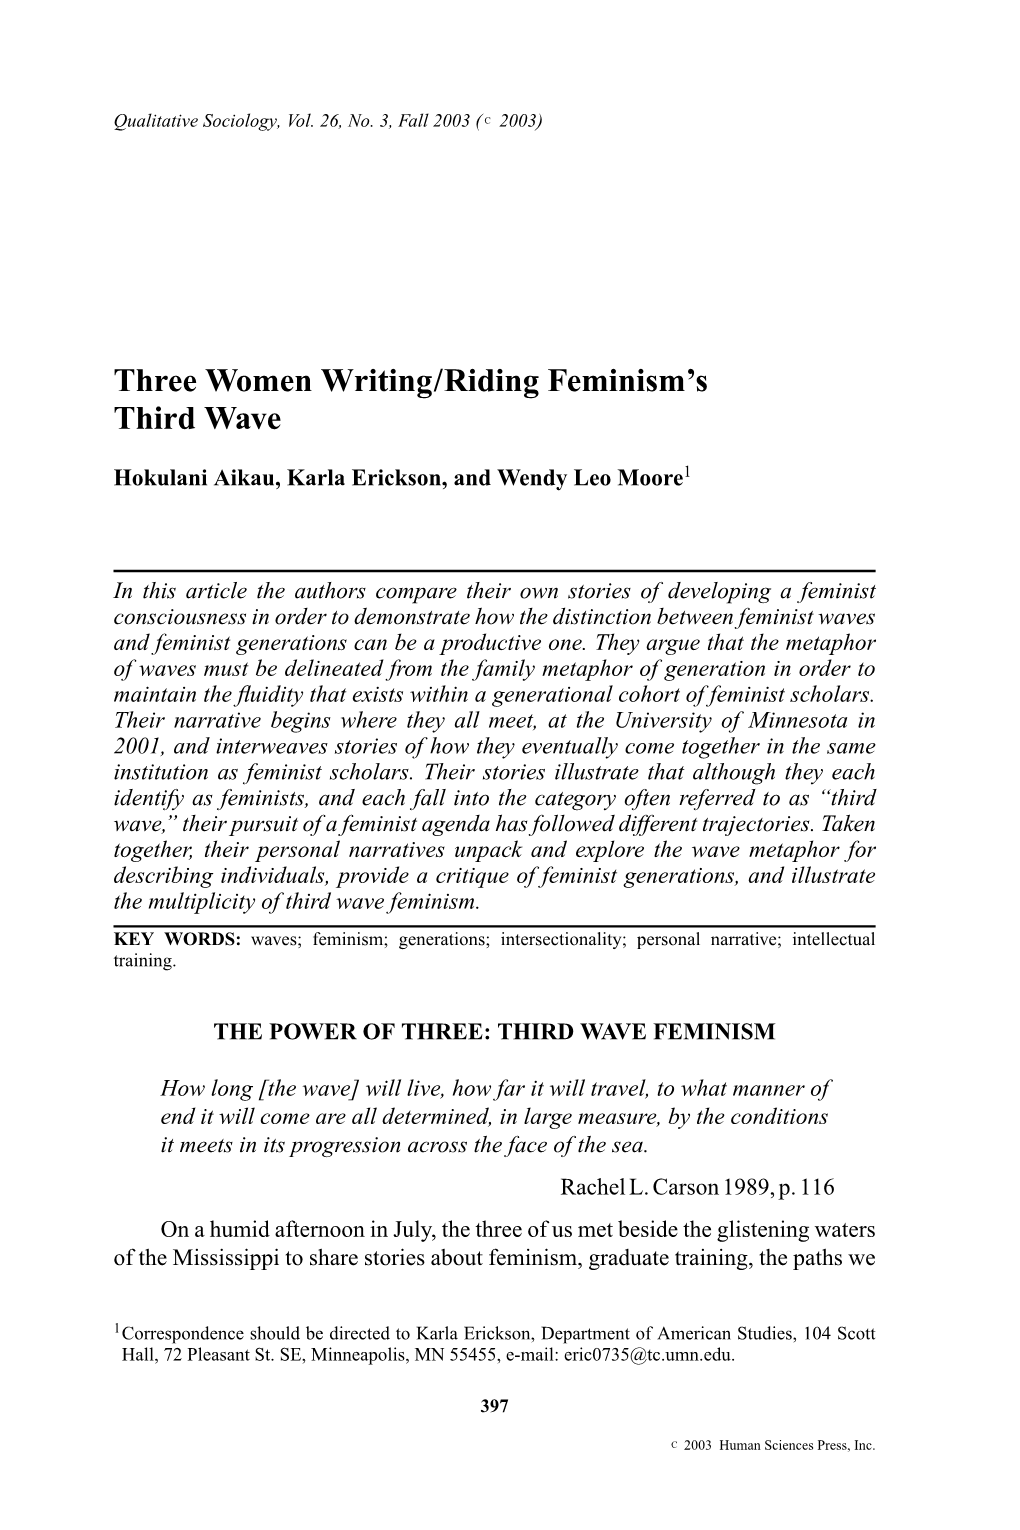 Three Women Writing/Riding Feminism's Third Wave